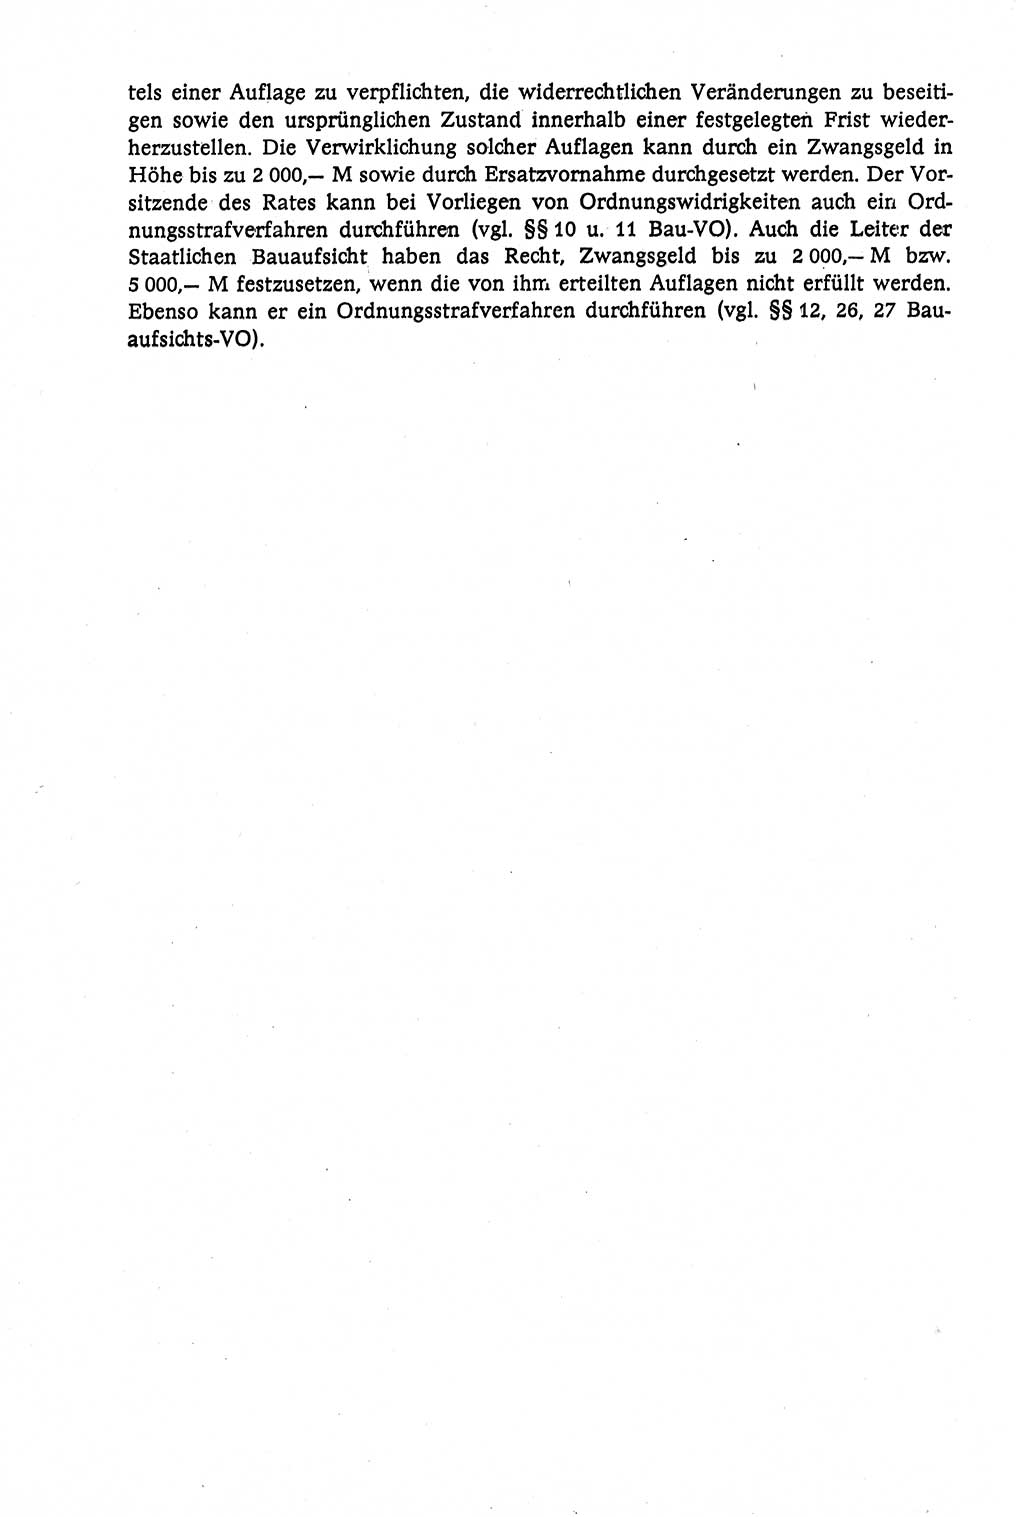 Verwaltungsrecht [Deutsche Demokratische Republik (DDR)], Lehrbuch 1979, Seite 434 (Verw.-R. DDR Lb. 1979, S. 434)